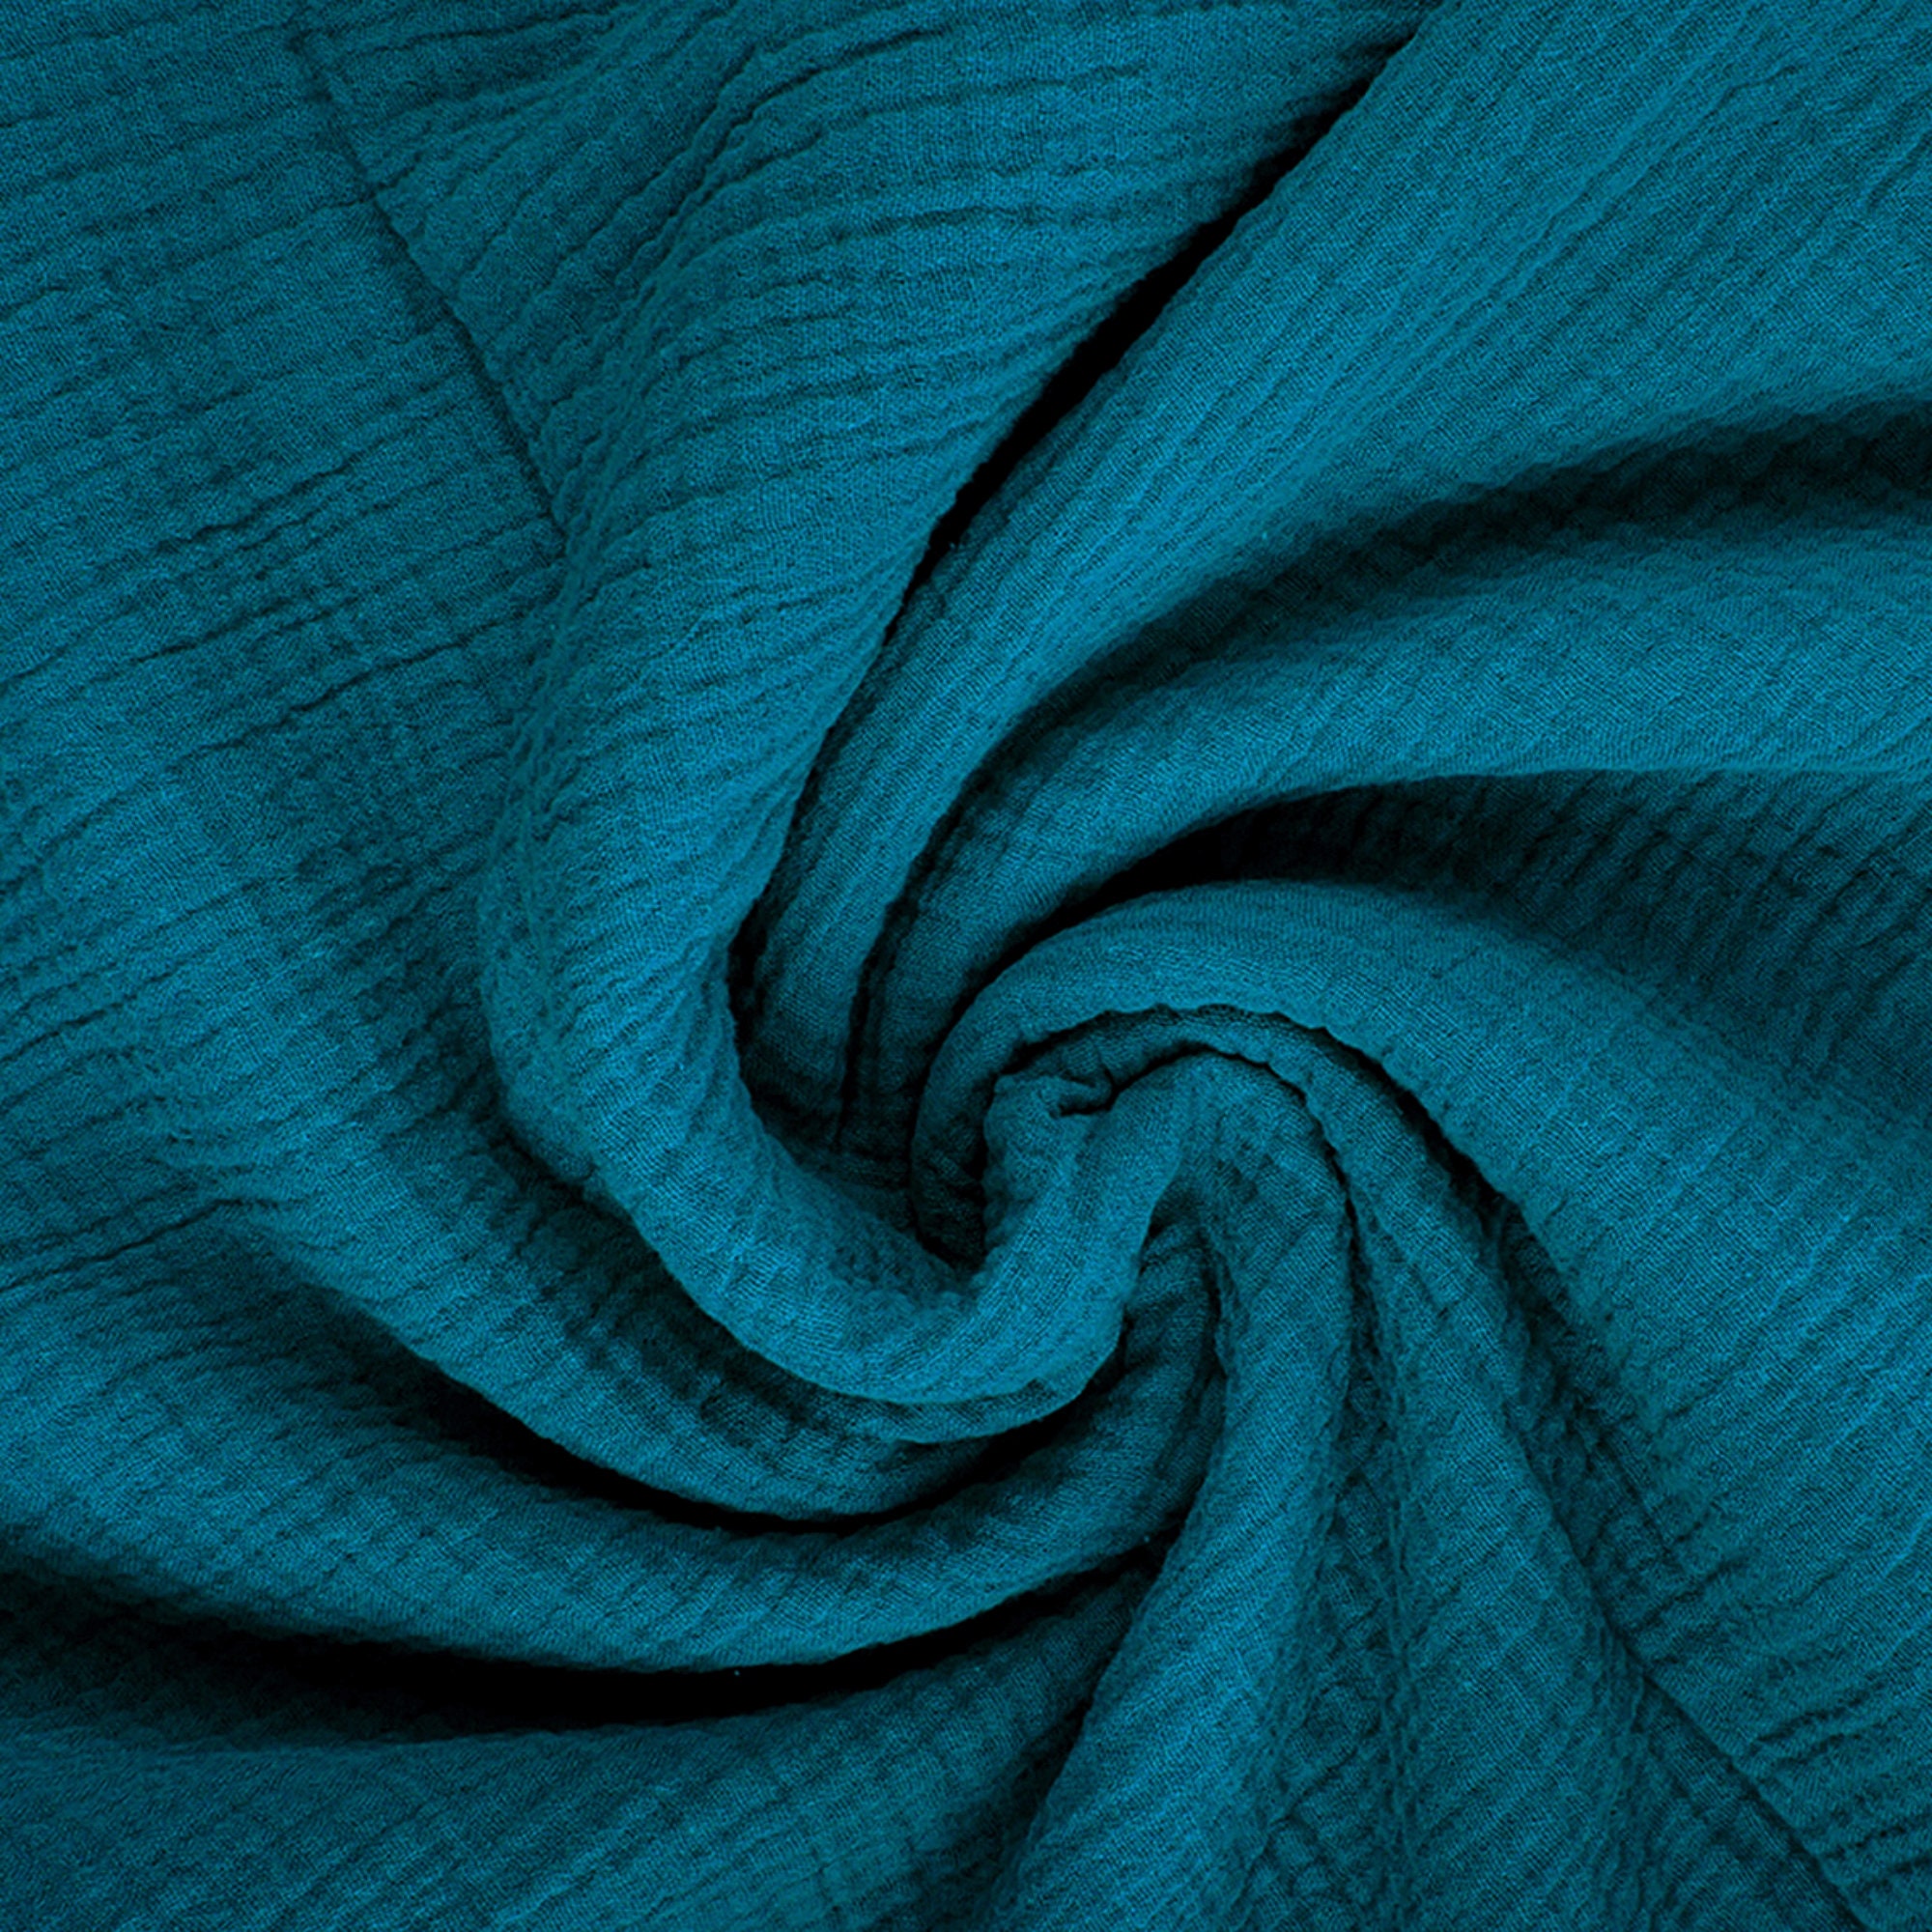 Double Gauze Fabric Digital Printed, Muslin Fabric, Double Gauze Fabric by  the Half Yard, Gaze De Coton Au Metre, Bio Musselin Stoff -  Norway